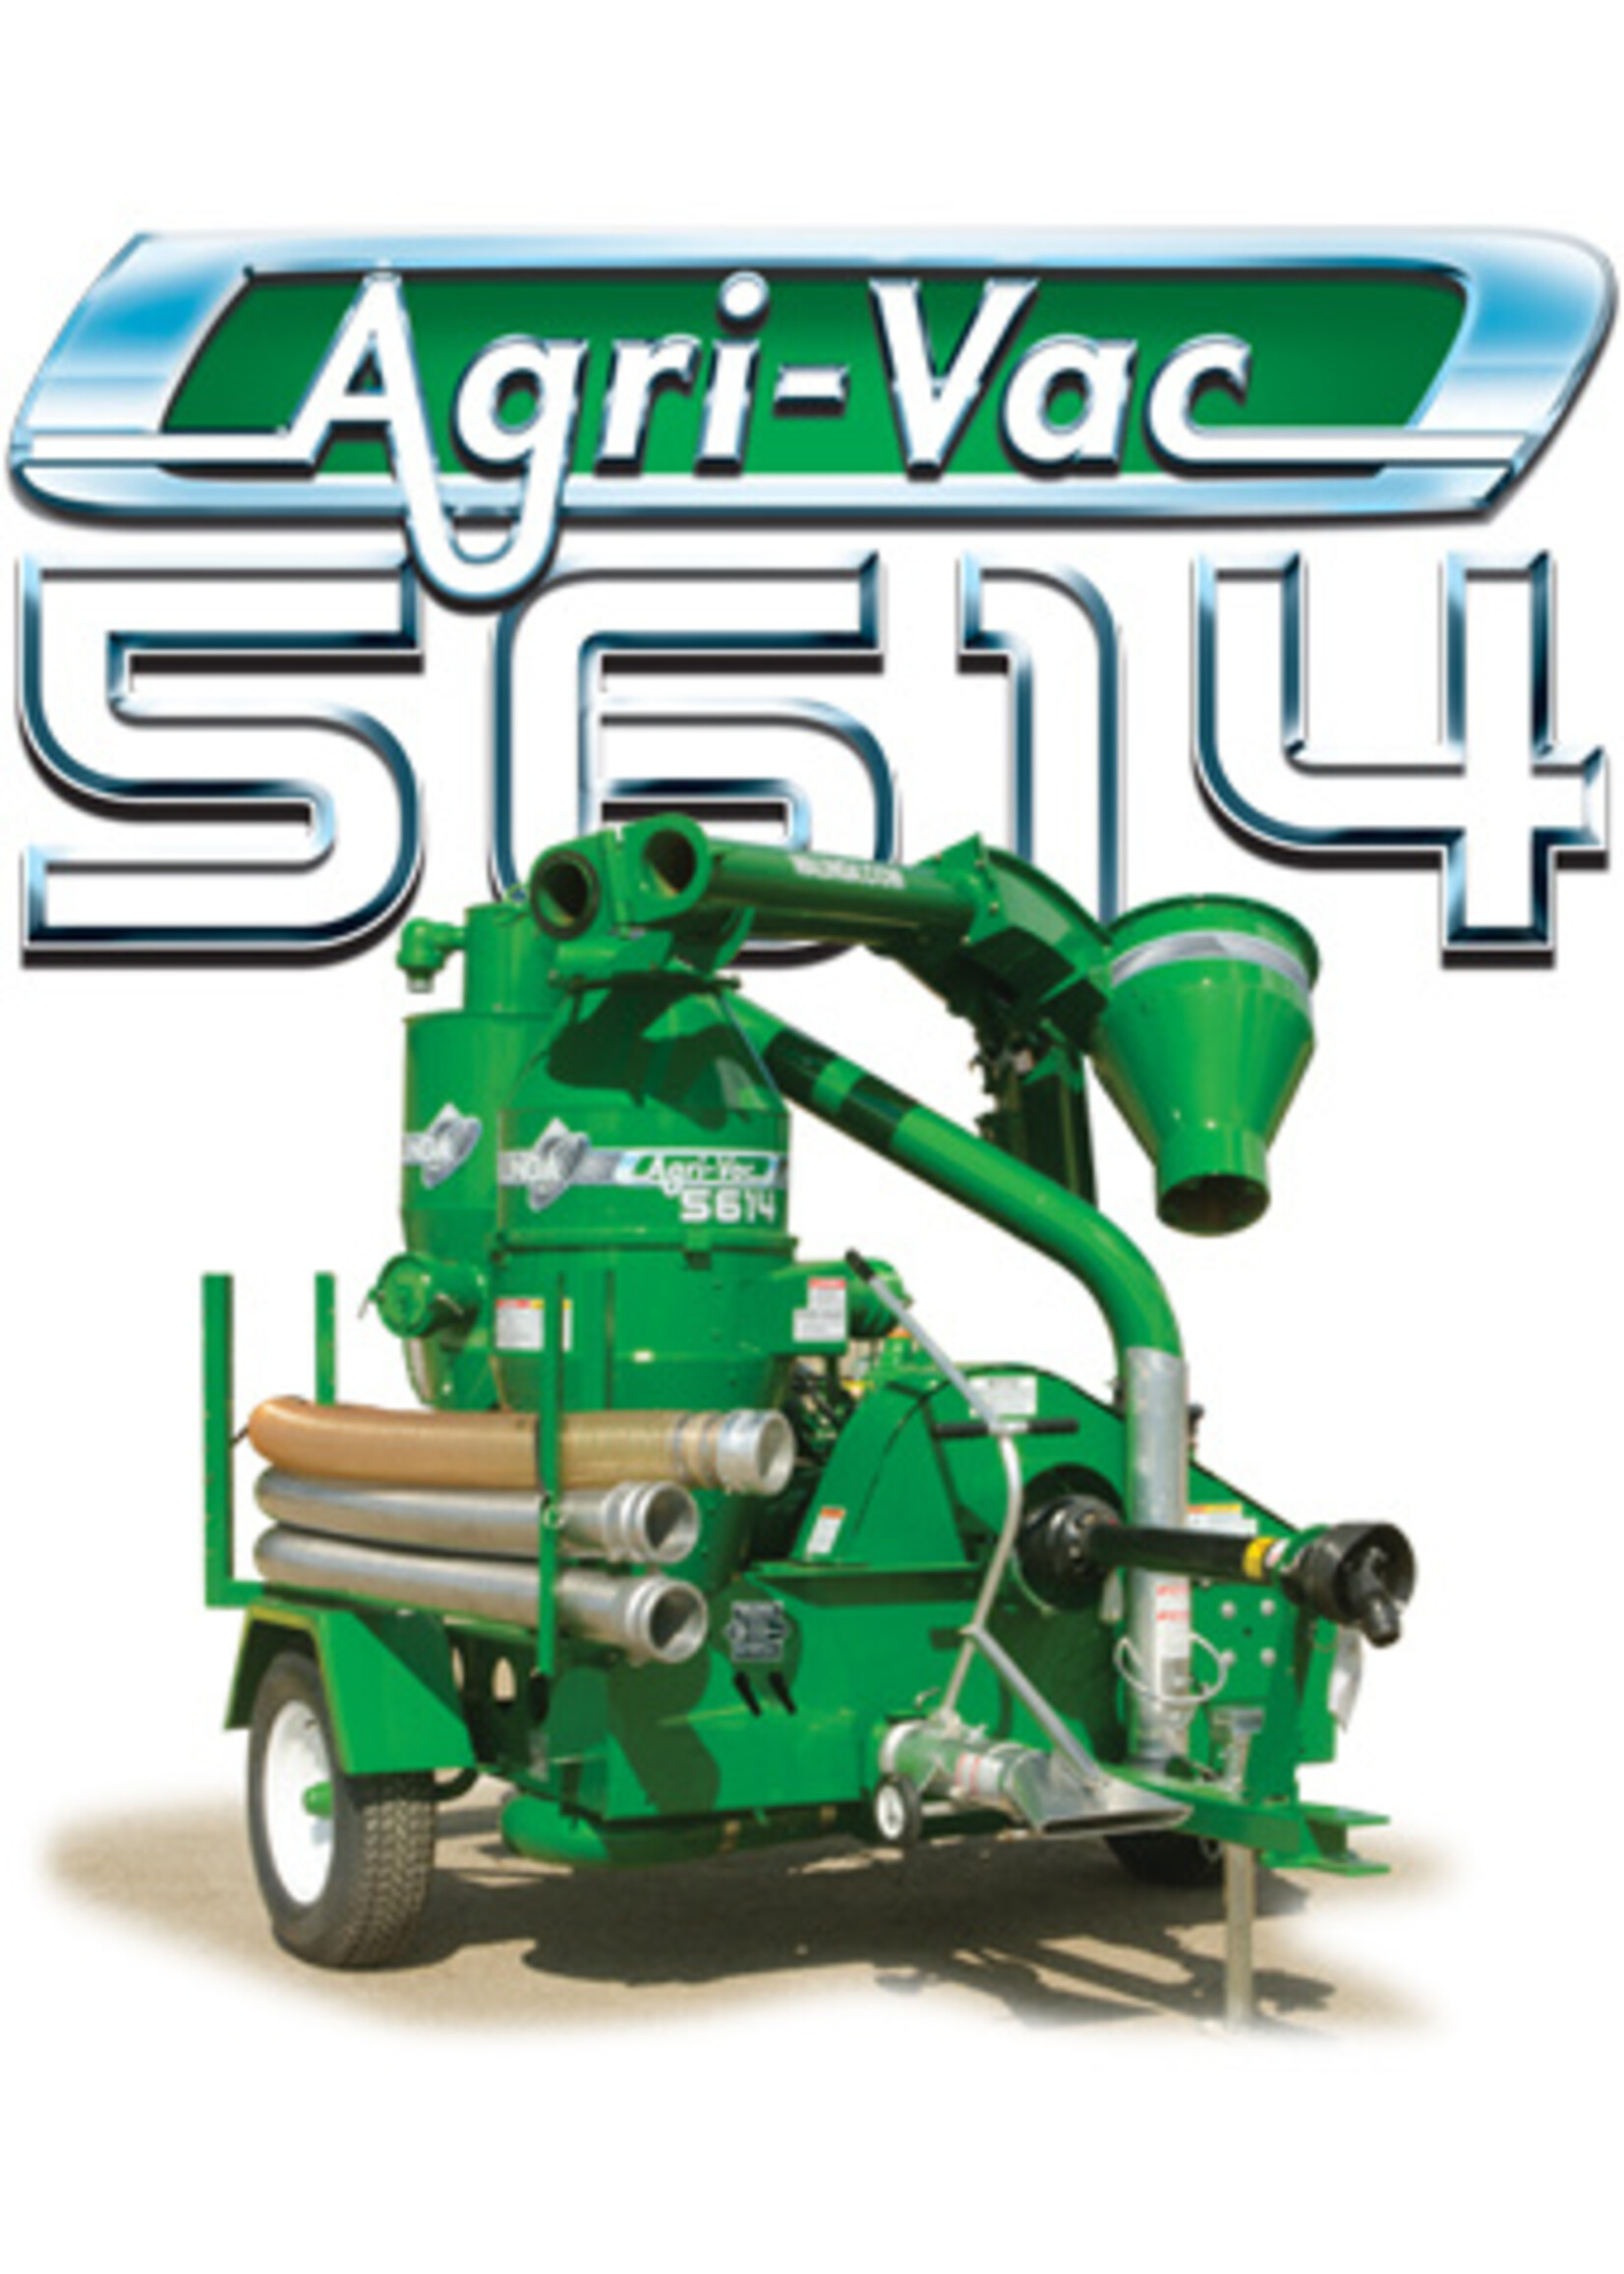 Agri-Vac 5614